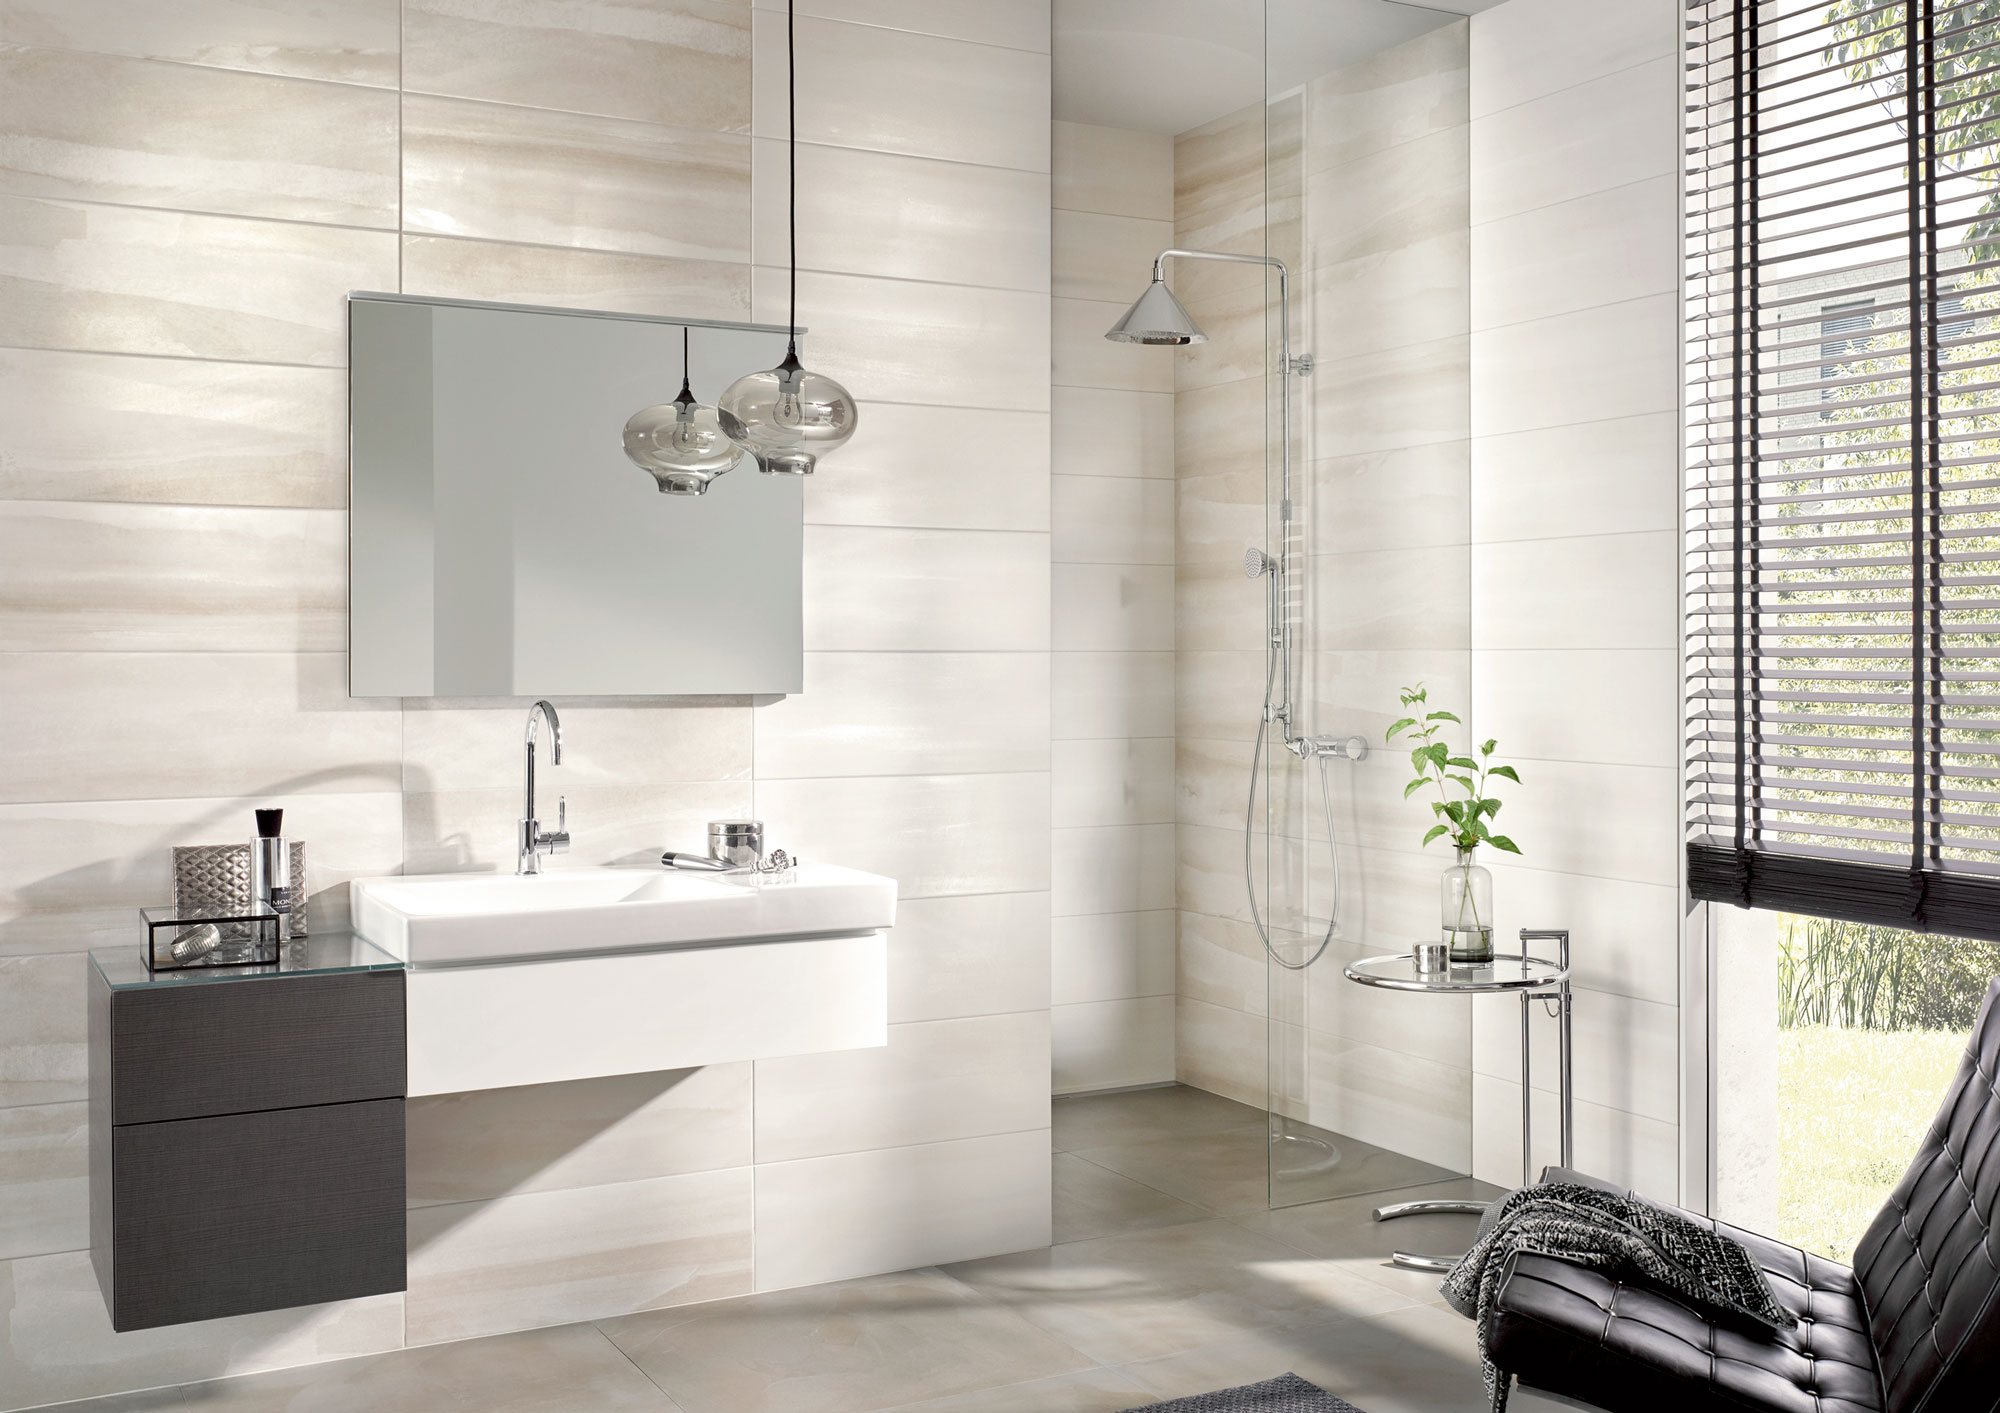 Badezimmer futuristisch: sehr helle Farben, schwarze Details